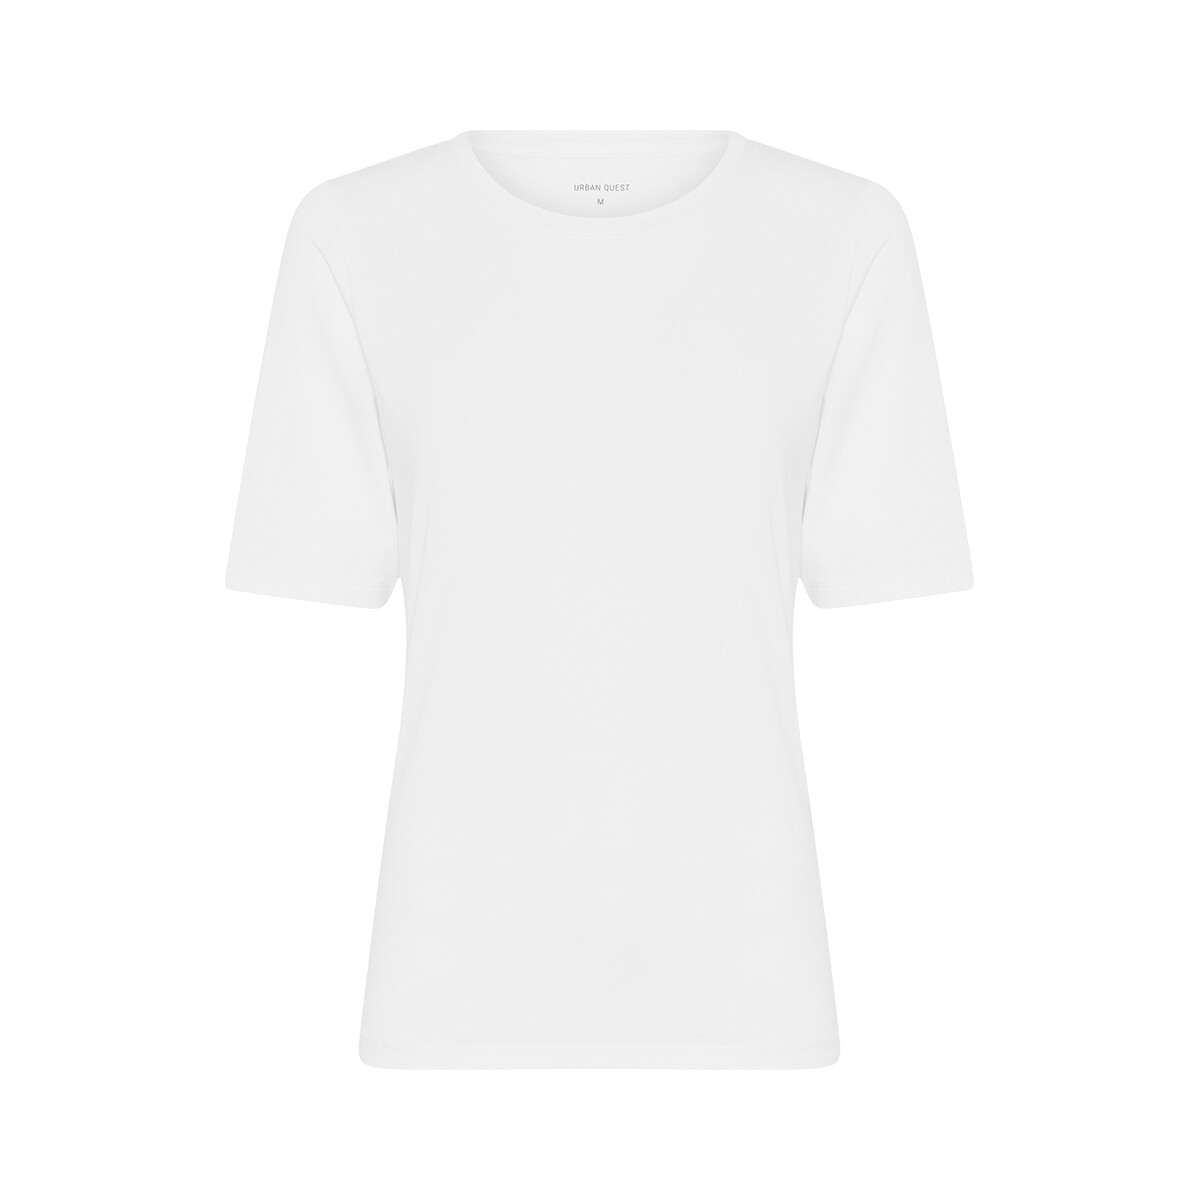 Billede af Urban Quest Bamboo Slim Fit T-shirt, Farve: Hvid, Størrelse: XL, Dame